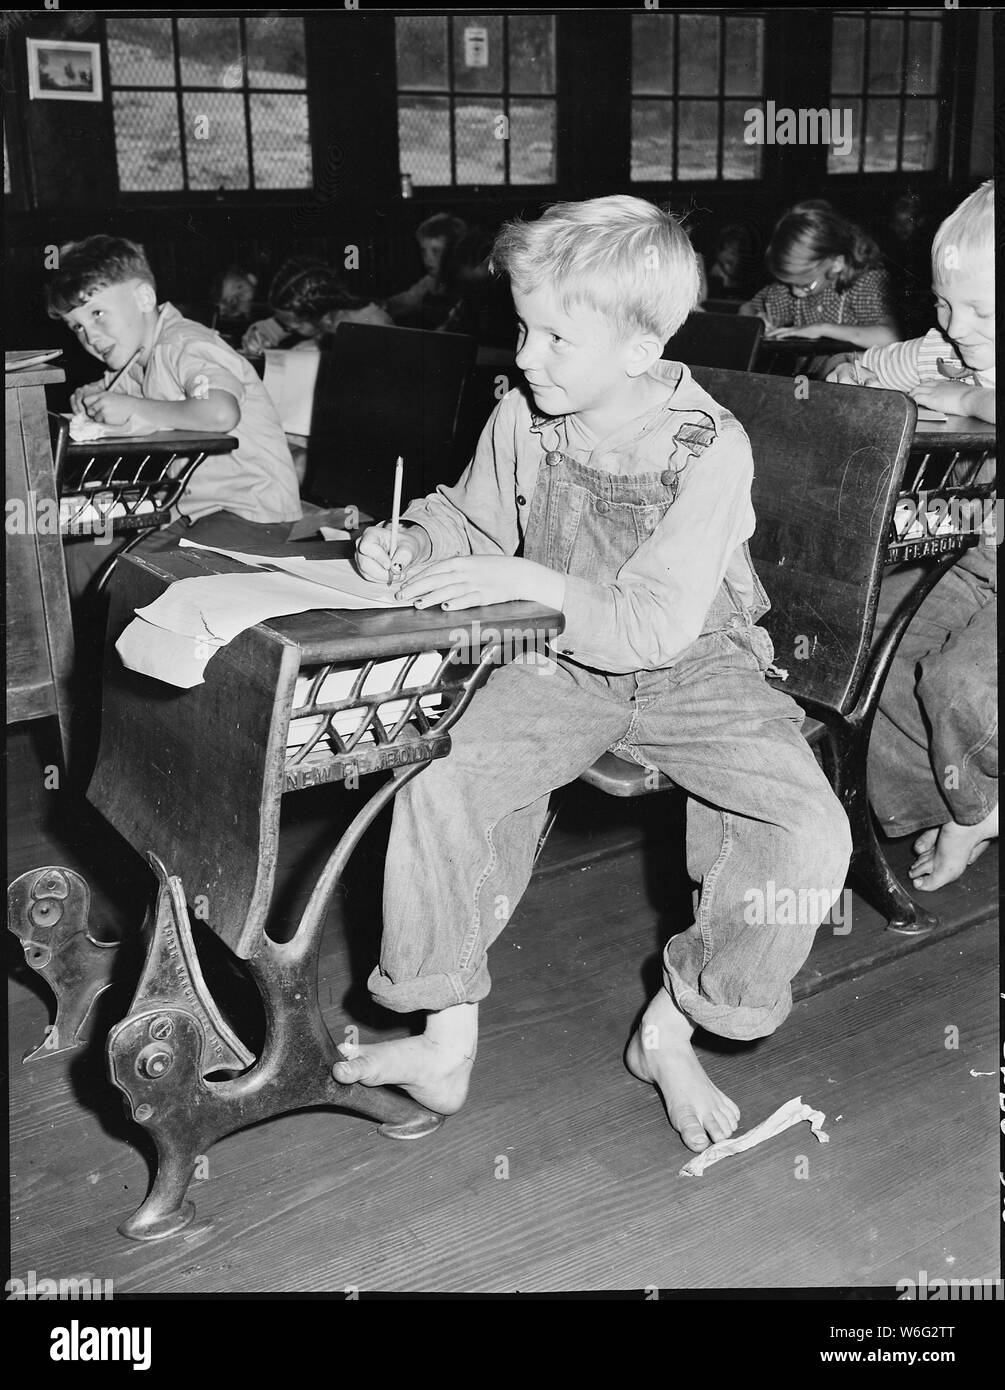 Coal miner's child in grade school. Lejunior, Harlan County, Kentucky. Stock Photo